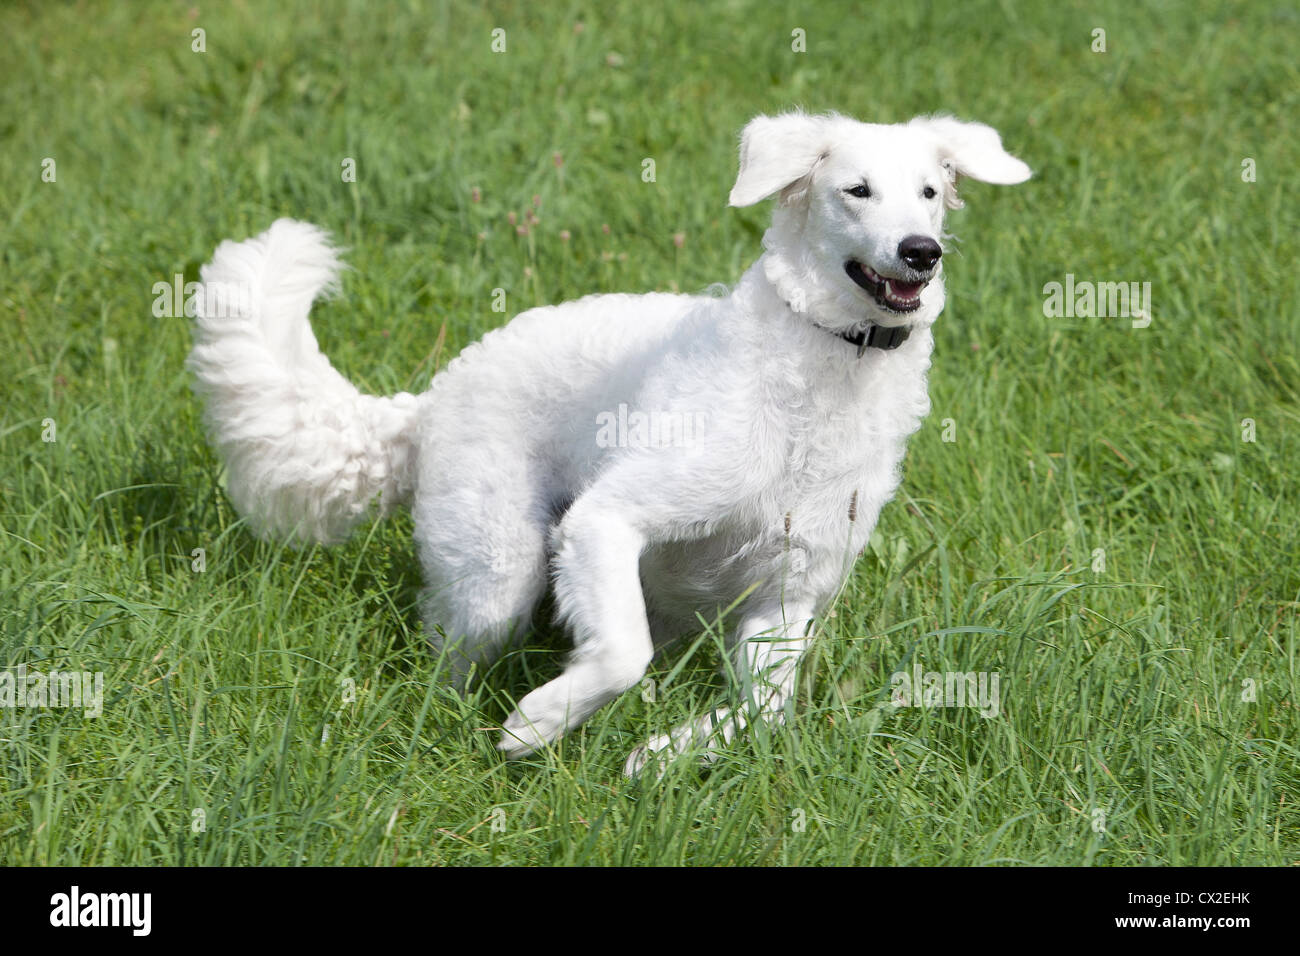 Kuvacz Hund Welpen puppies dog white sitting sitzend Wiese grün green grass aufmerksam attentively Europa Europe Stock Photo